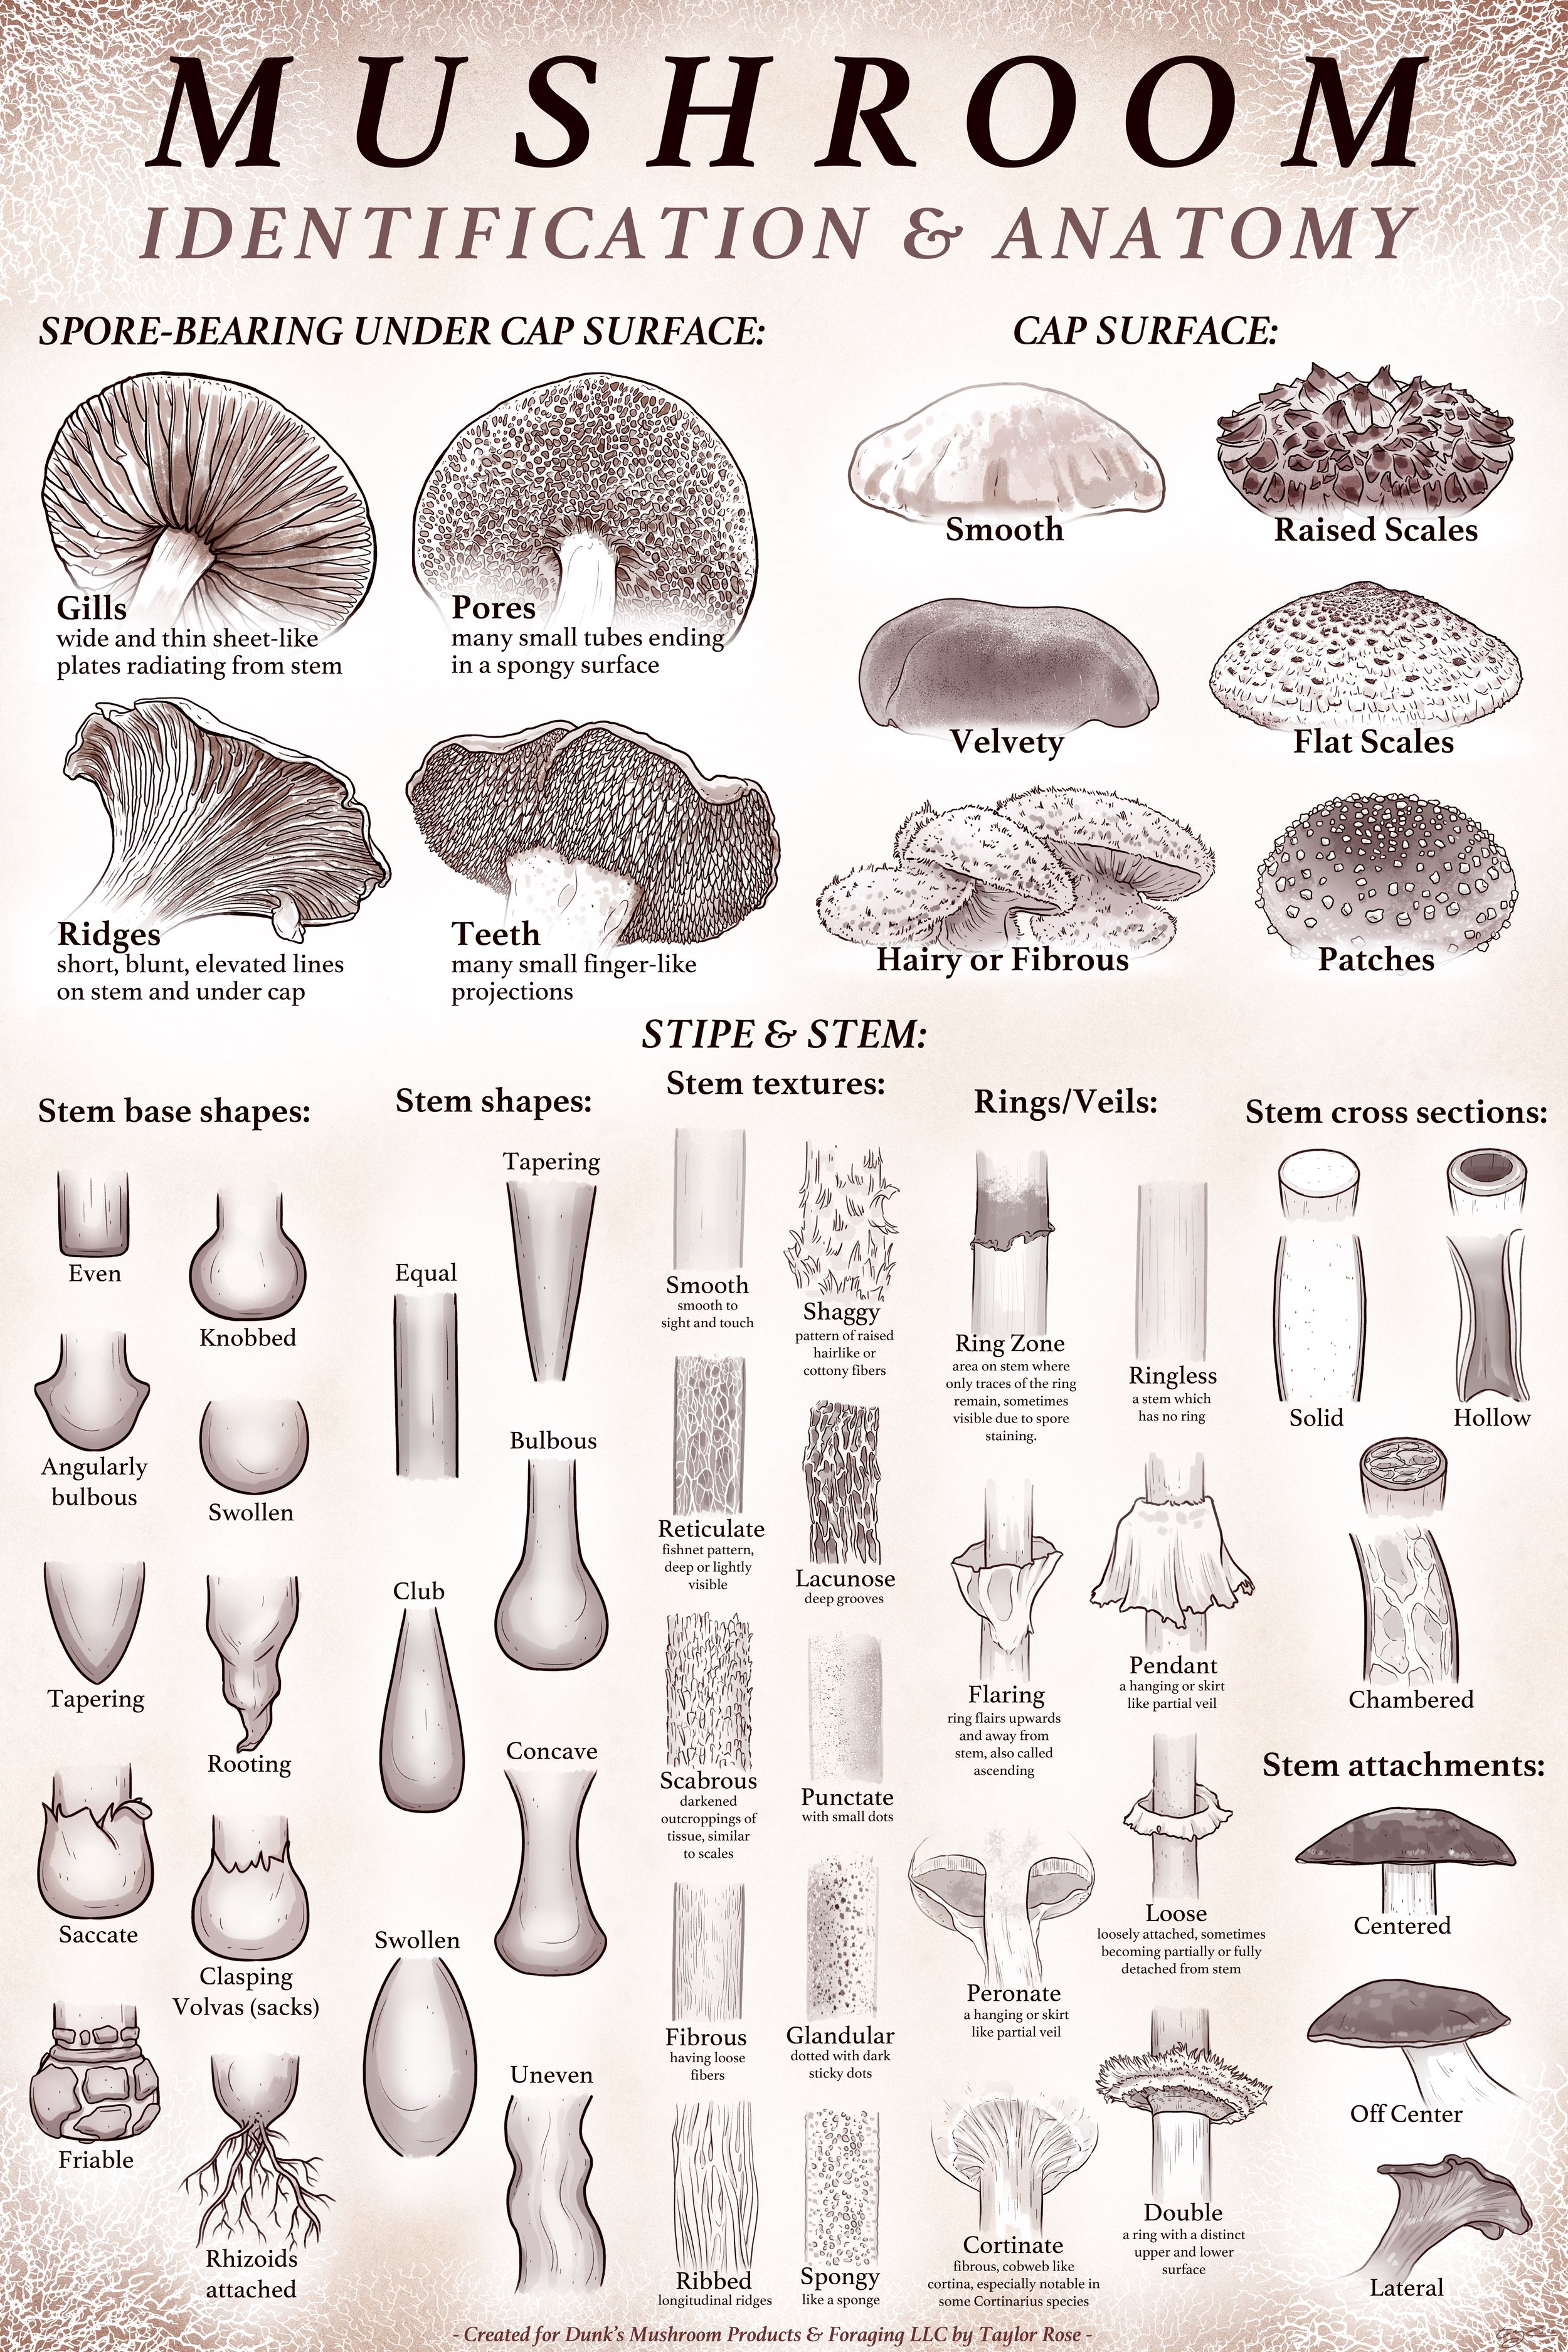   Mushroom ID &amp; Anatomy  Educational Poster   Dunks Mushrooms      